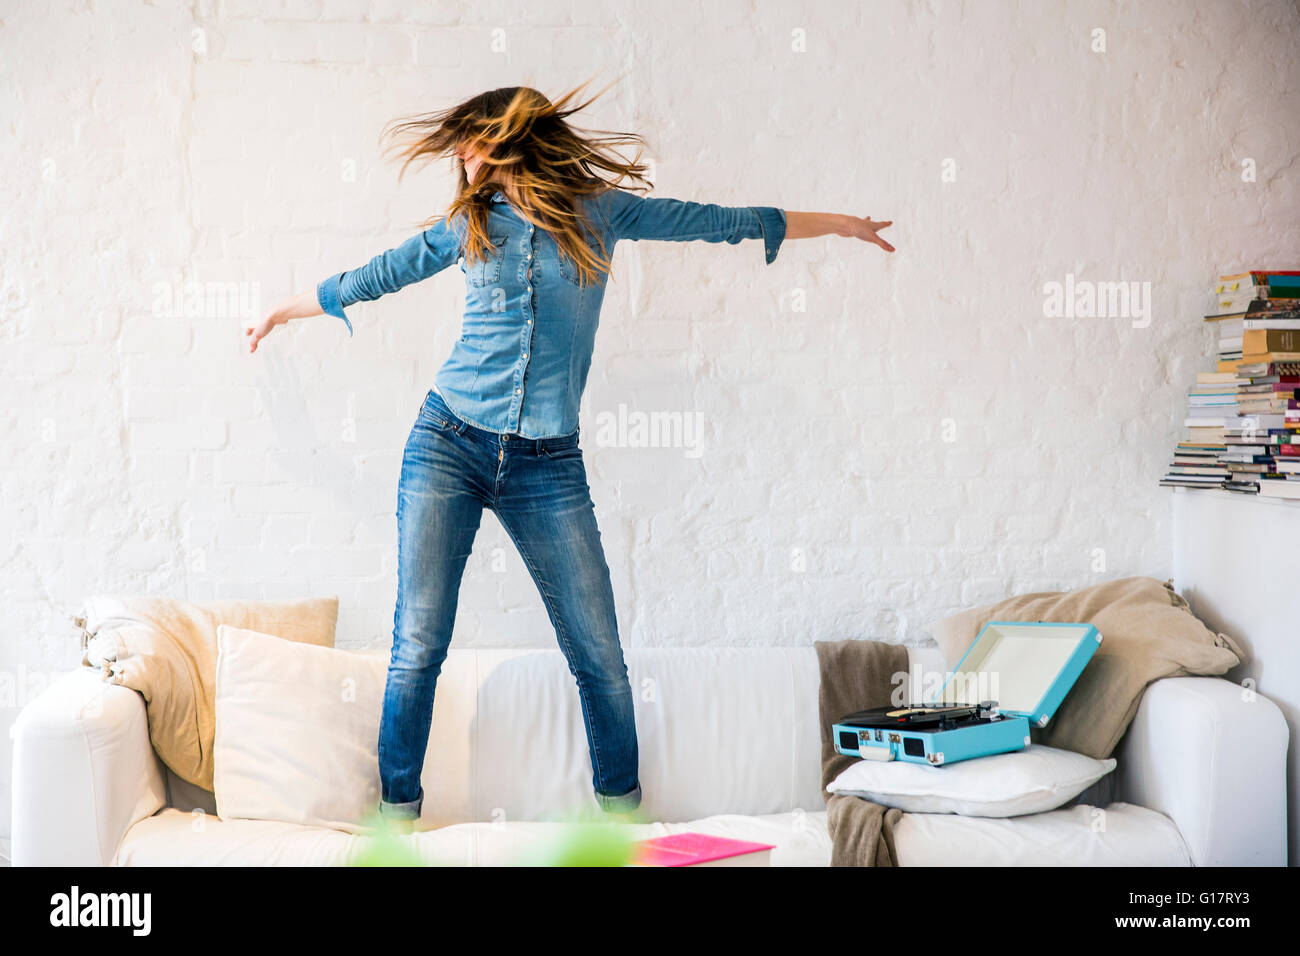 Junge Frau auf Sofa tanzen und schütteln ihr Haar Stockfoto